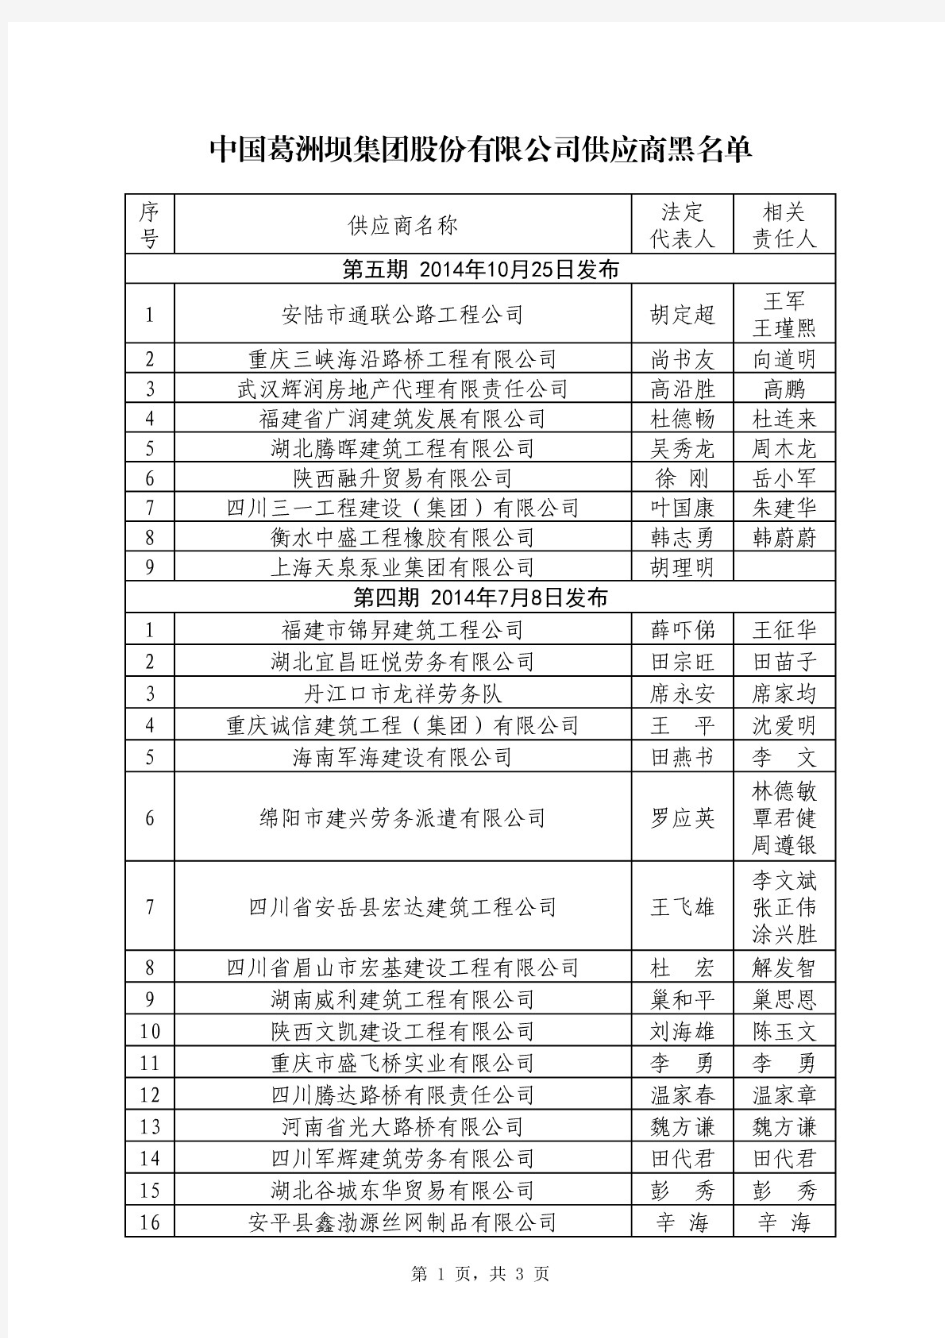 中国葛洲坝集团股份有限公司供应商黑名单